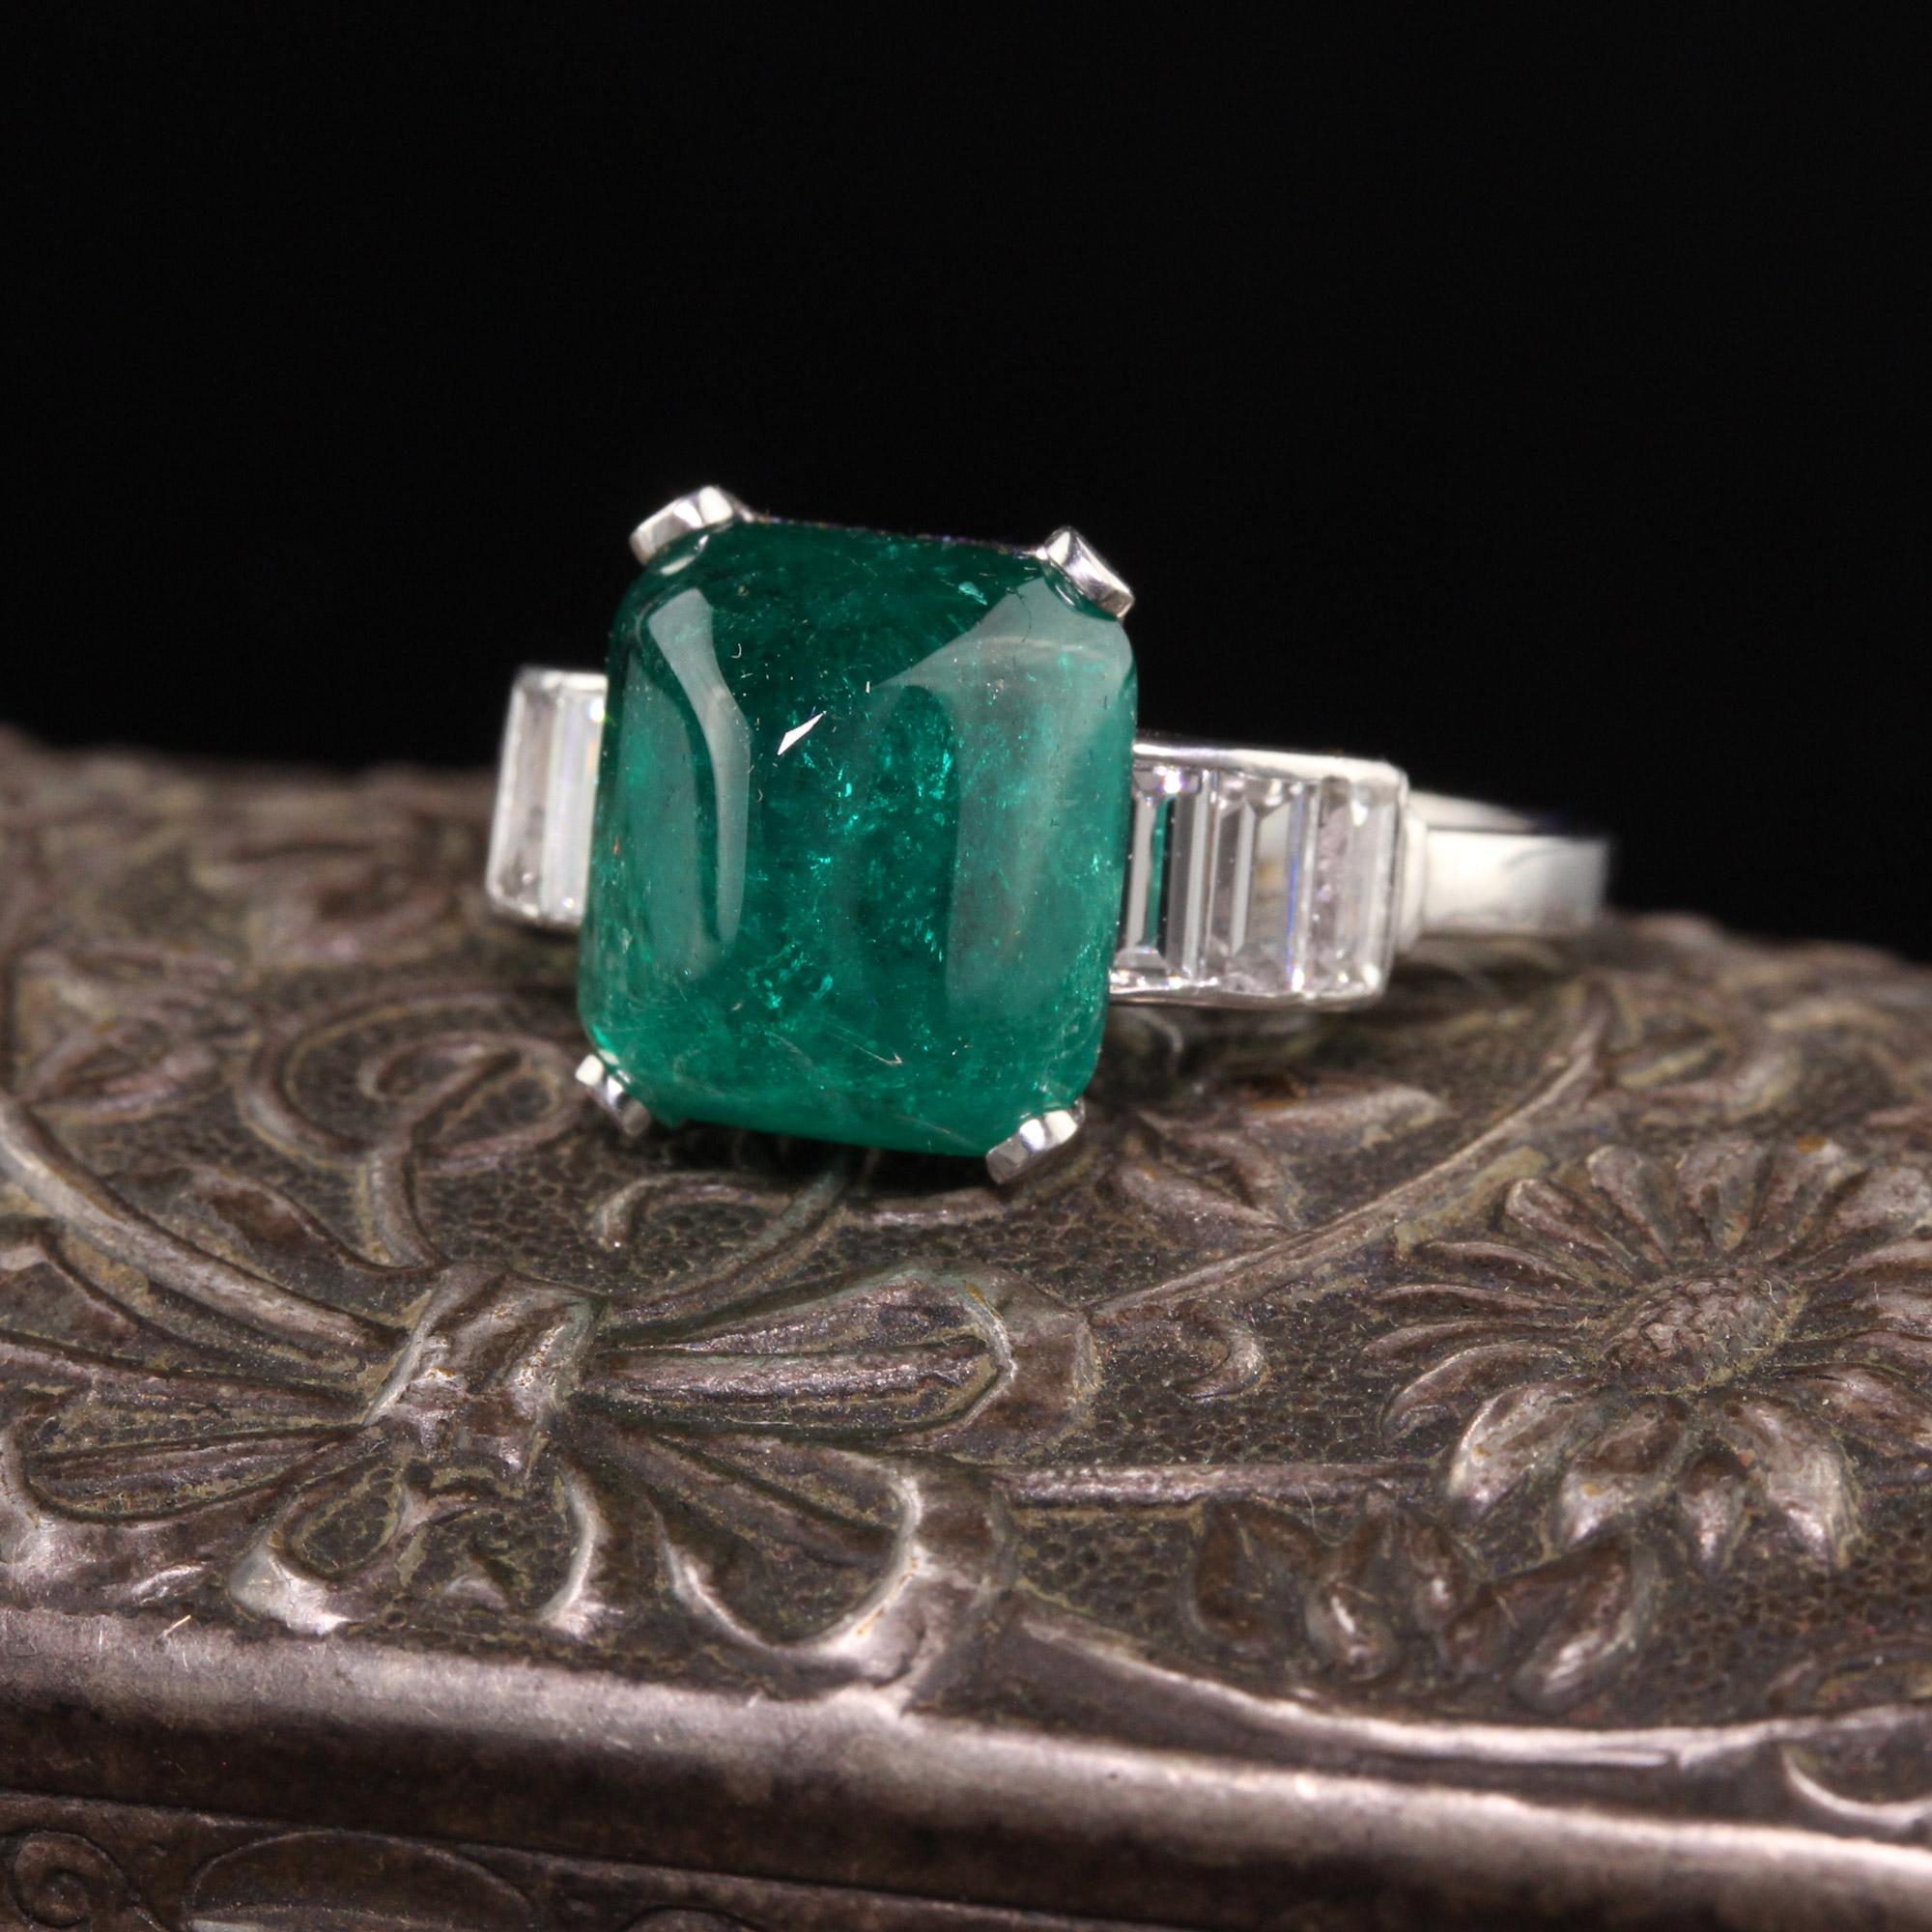 Schöne antike Art Deco Platin Sugarloaf Smaragd und Baguette Diamant Ring. Dieser atemberaubende Ring hat einen großen 4,73 ct Zuckerhut-Smaragd in einer tiefgrünen Farbe, die in eine Platin-Diamant-Baguette-Fassung gefasst ist. Ein wirklich